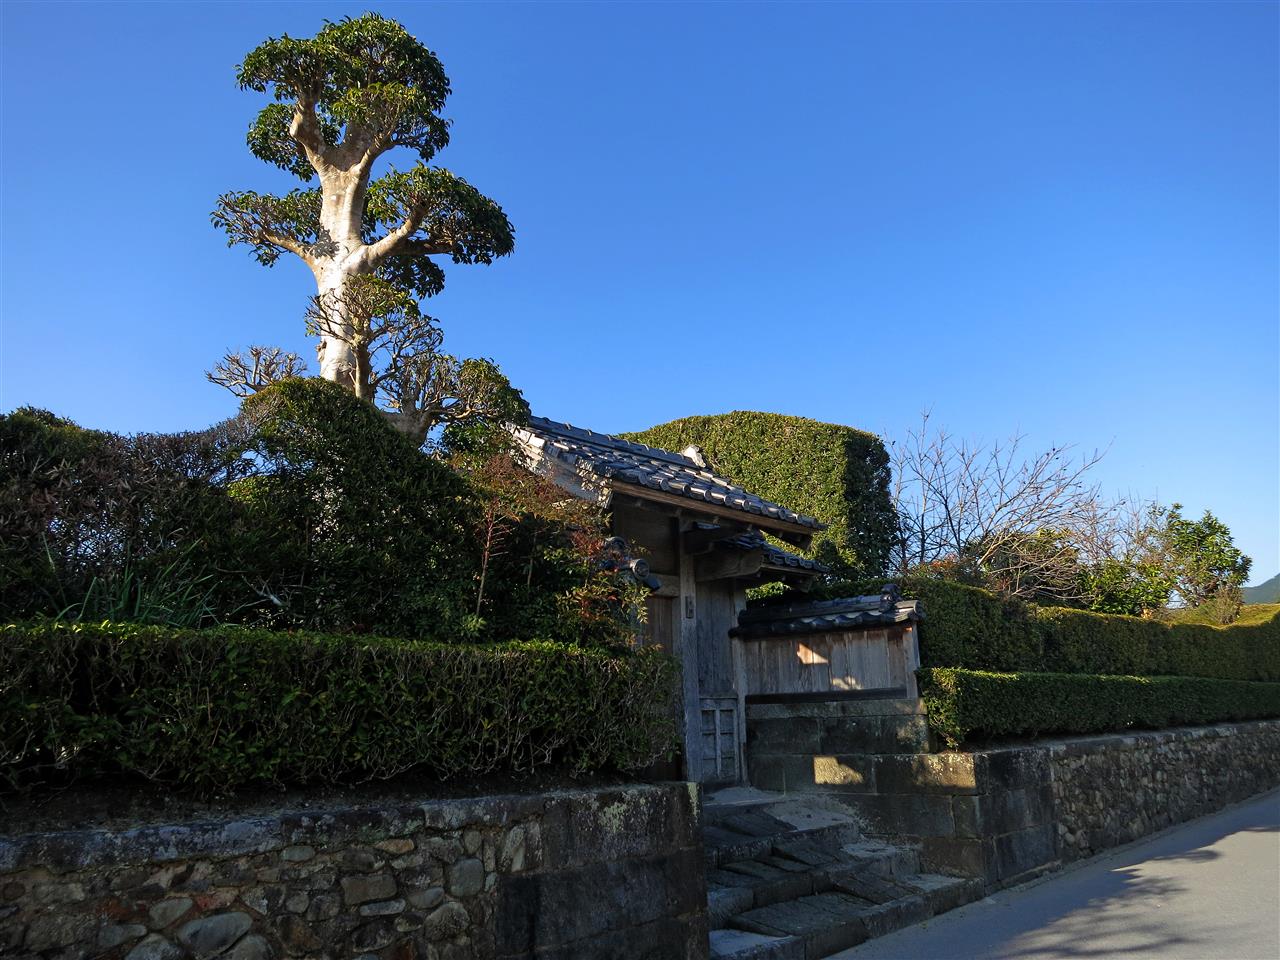 Eingang zu Samurai Haus in Chrian (Japan)